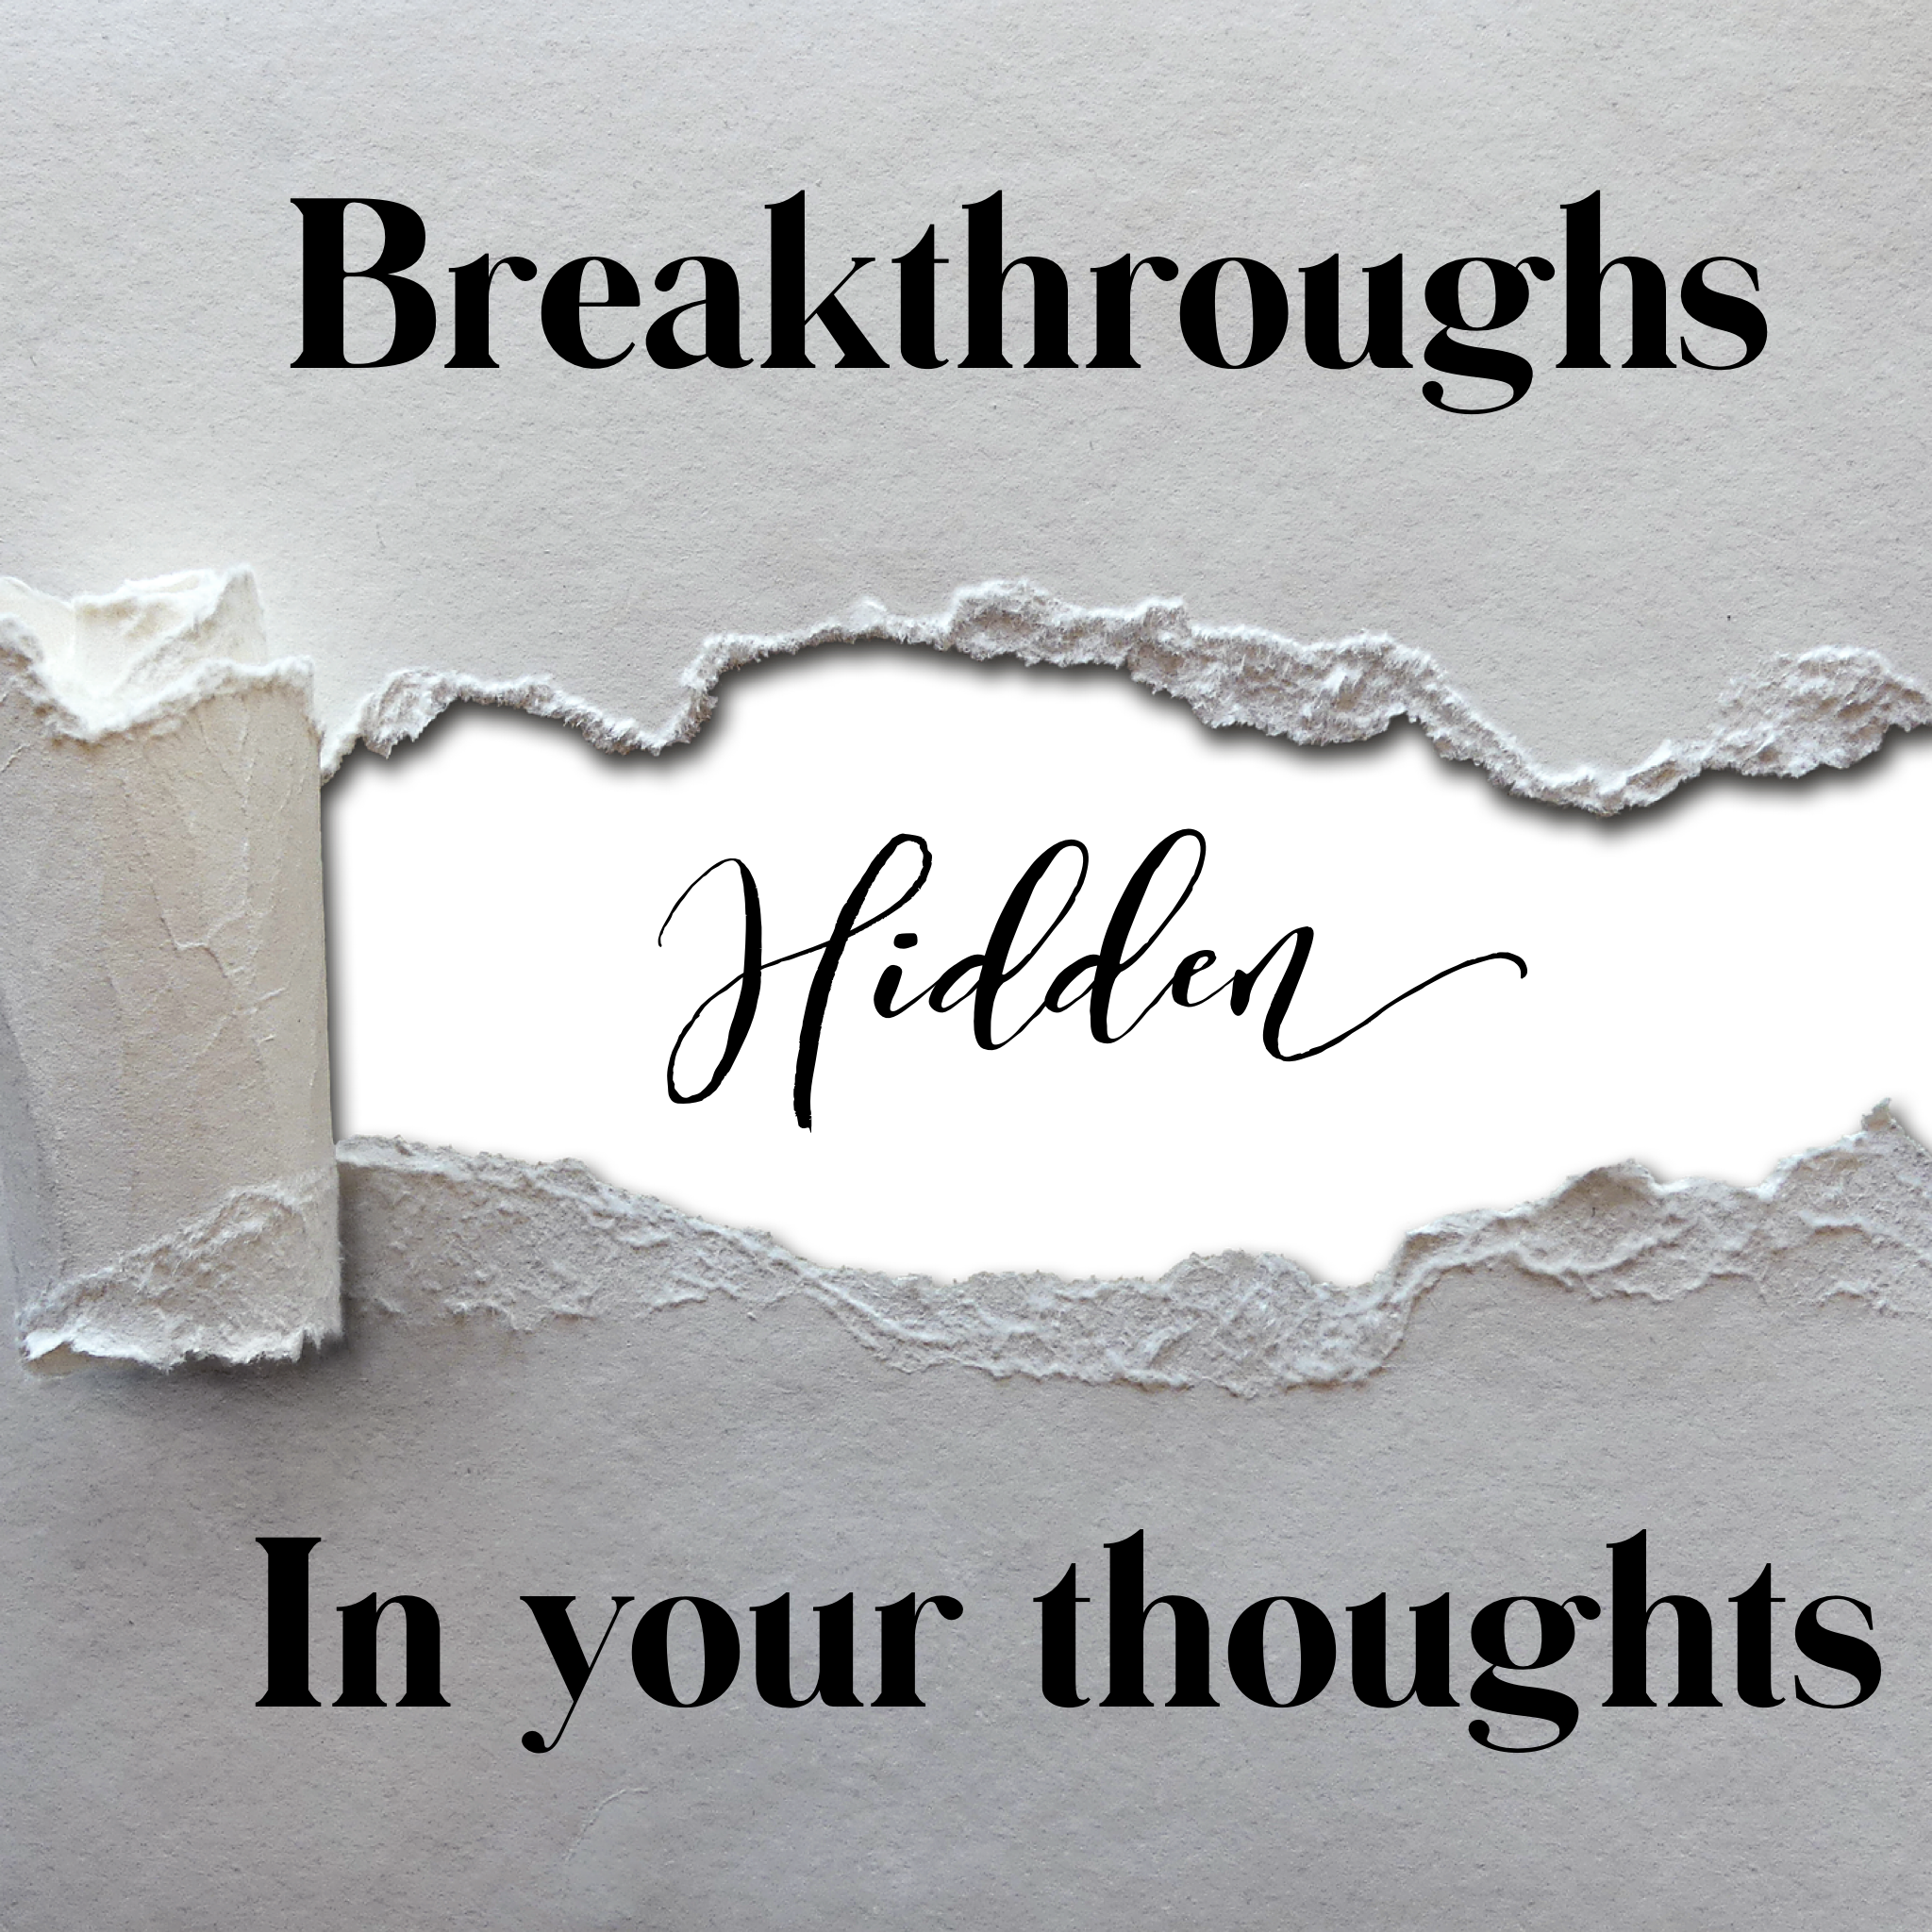 Breakthroughs Hidden in Your Thoughts - 7/16/19